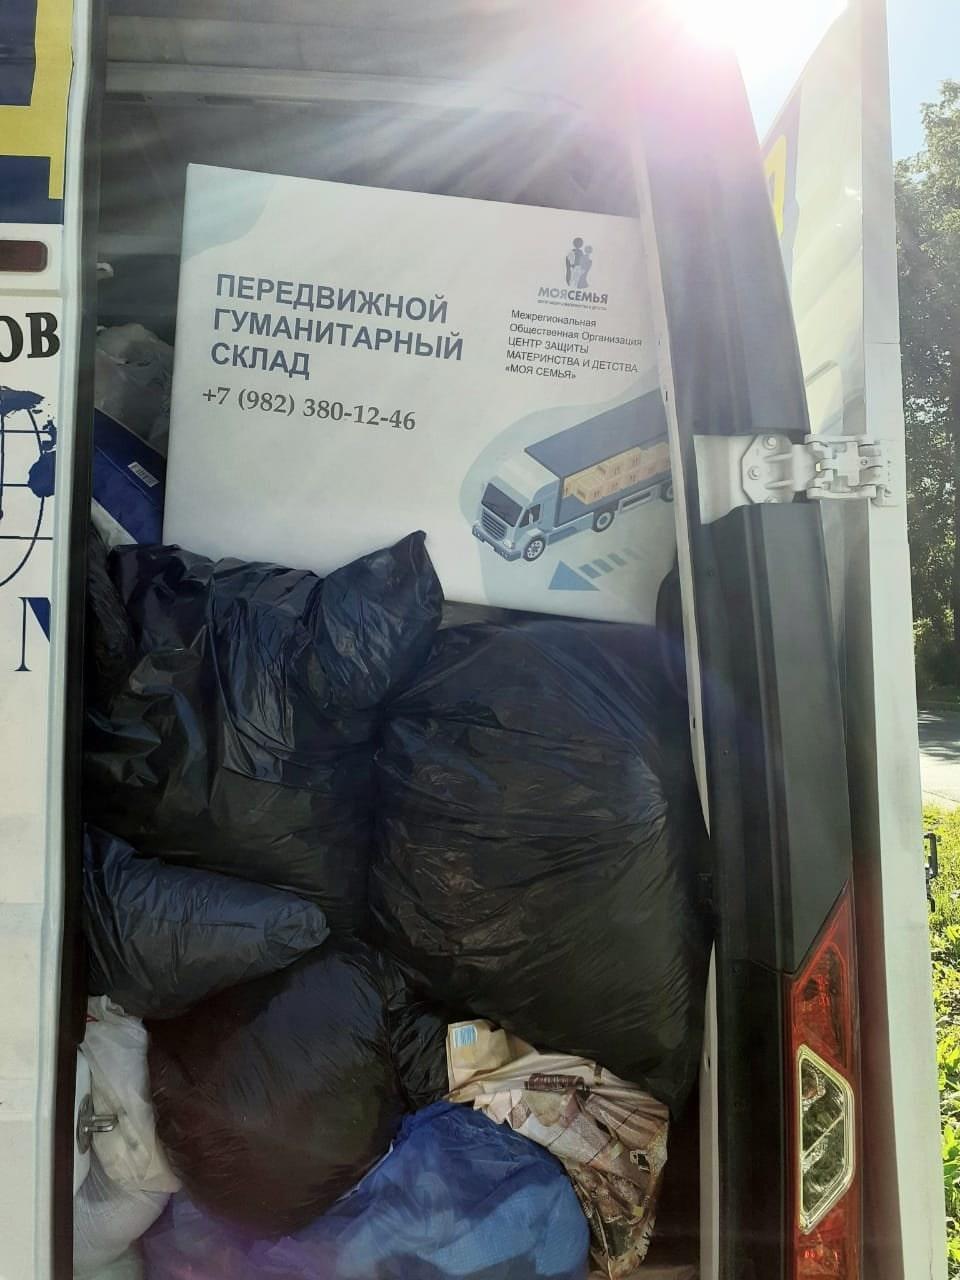 Передвижной гуманитарный склад. 70 семей в Унинском районе Кировской области получили продукты и одежду!